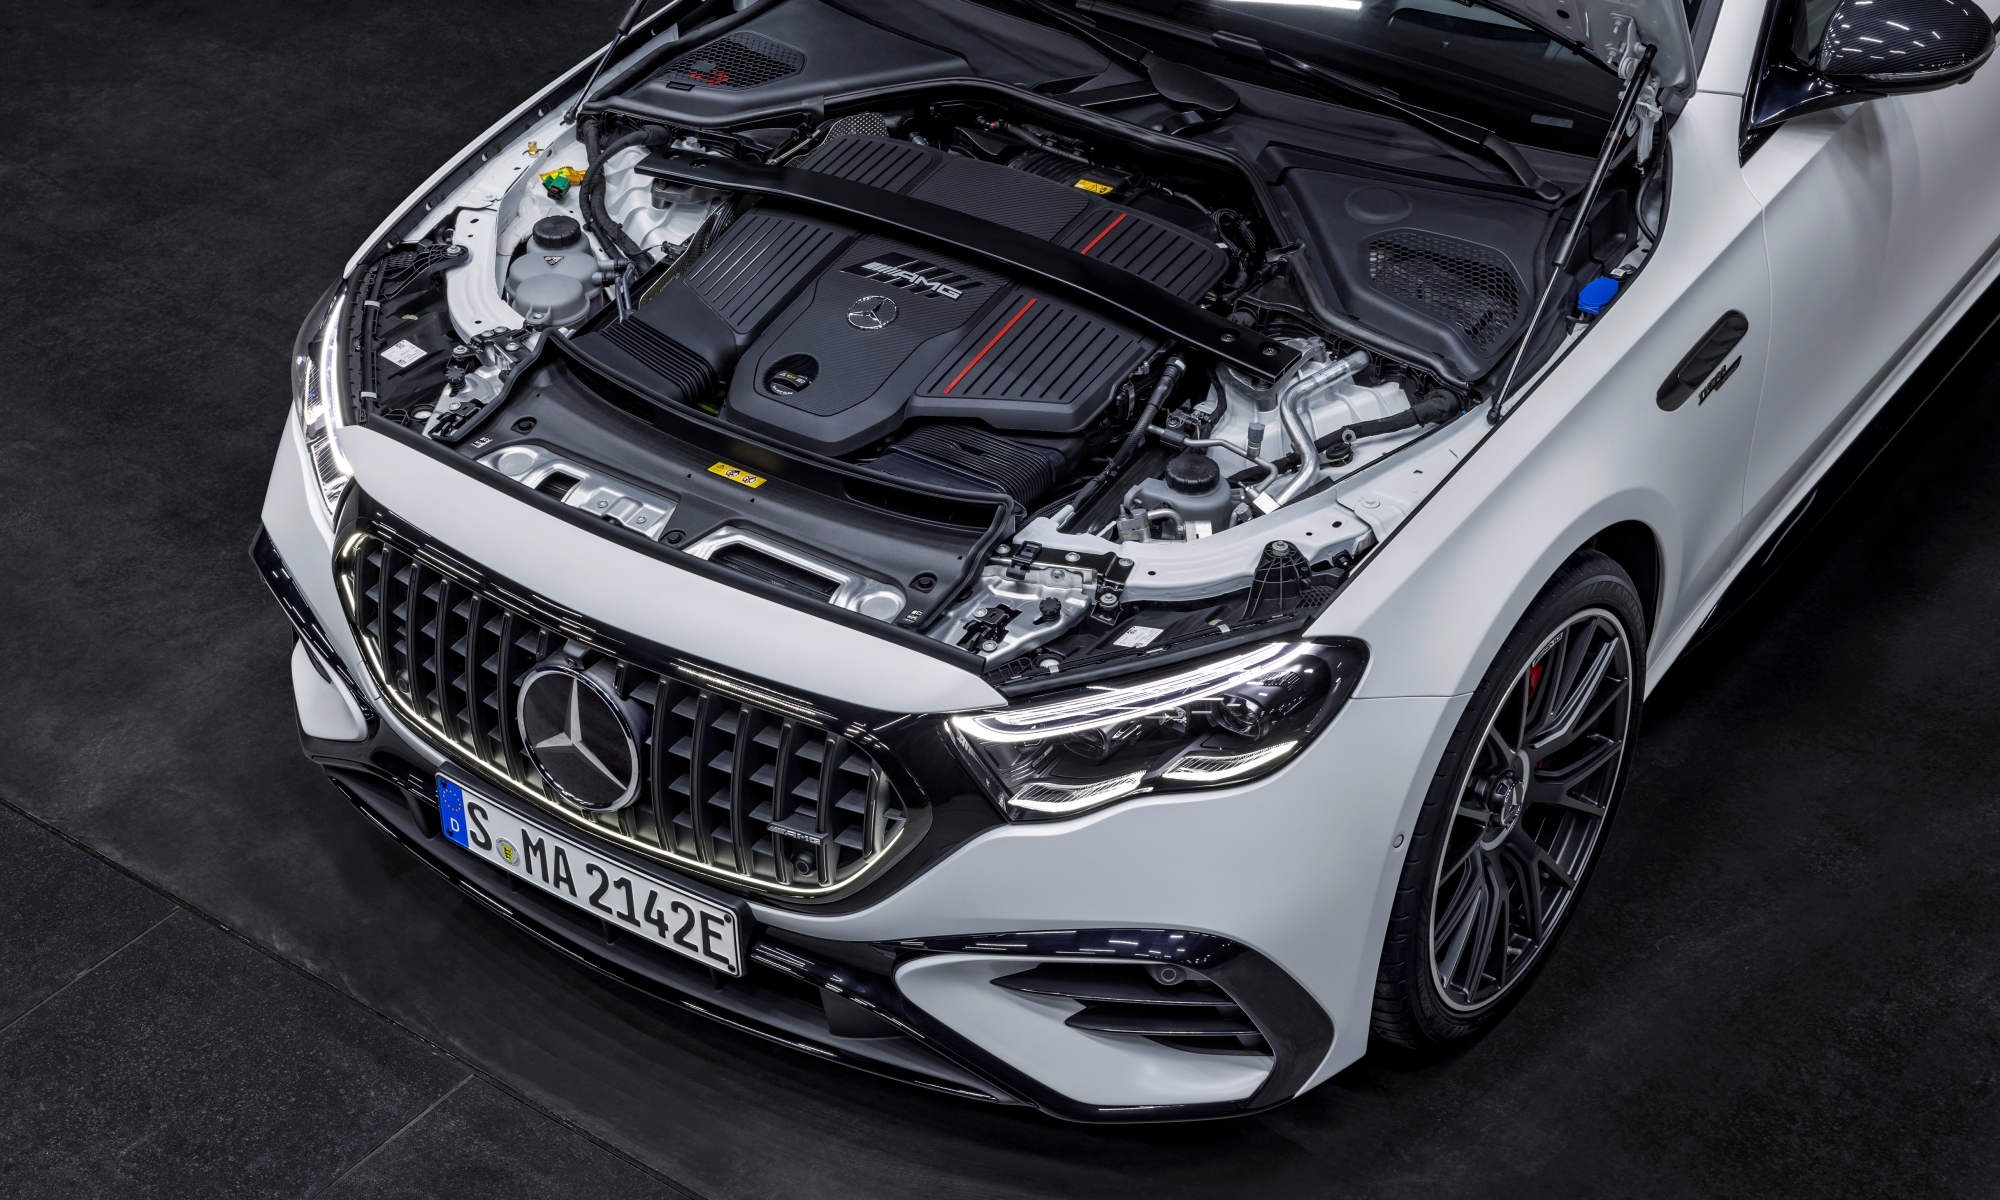 El 'corazón' del Mercedes-AMG E 53 Hybrid es un 3.0 turboalimentado de 449 caballos.